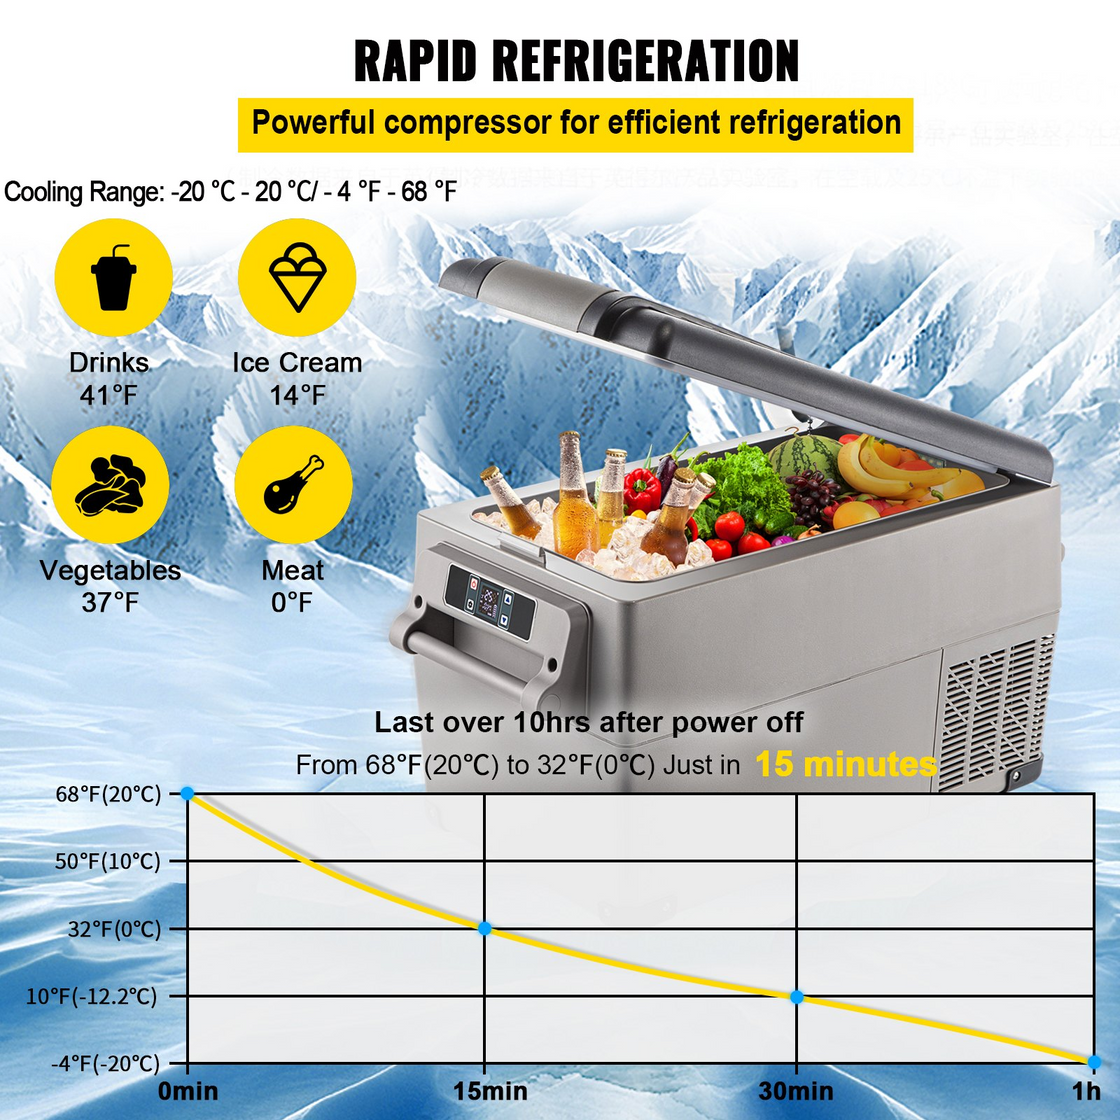 VEVOR Portable Refrigerator 37 Quart - Car Refrigerator Dual Zone with App Control